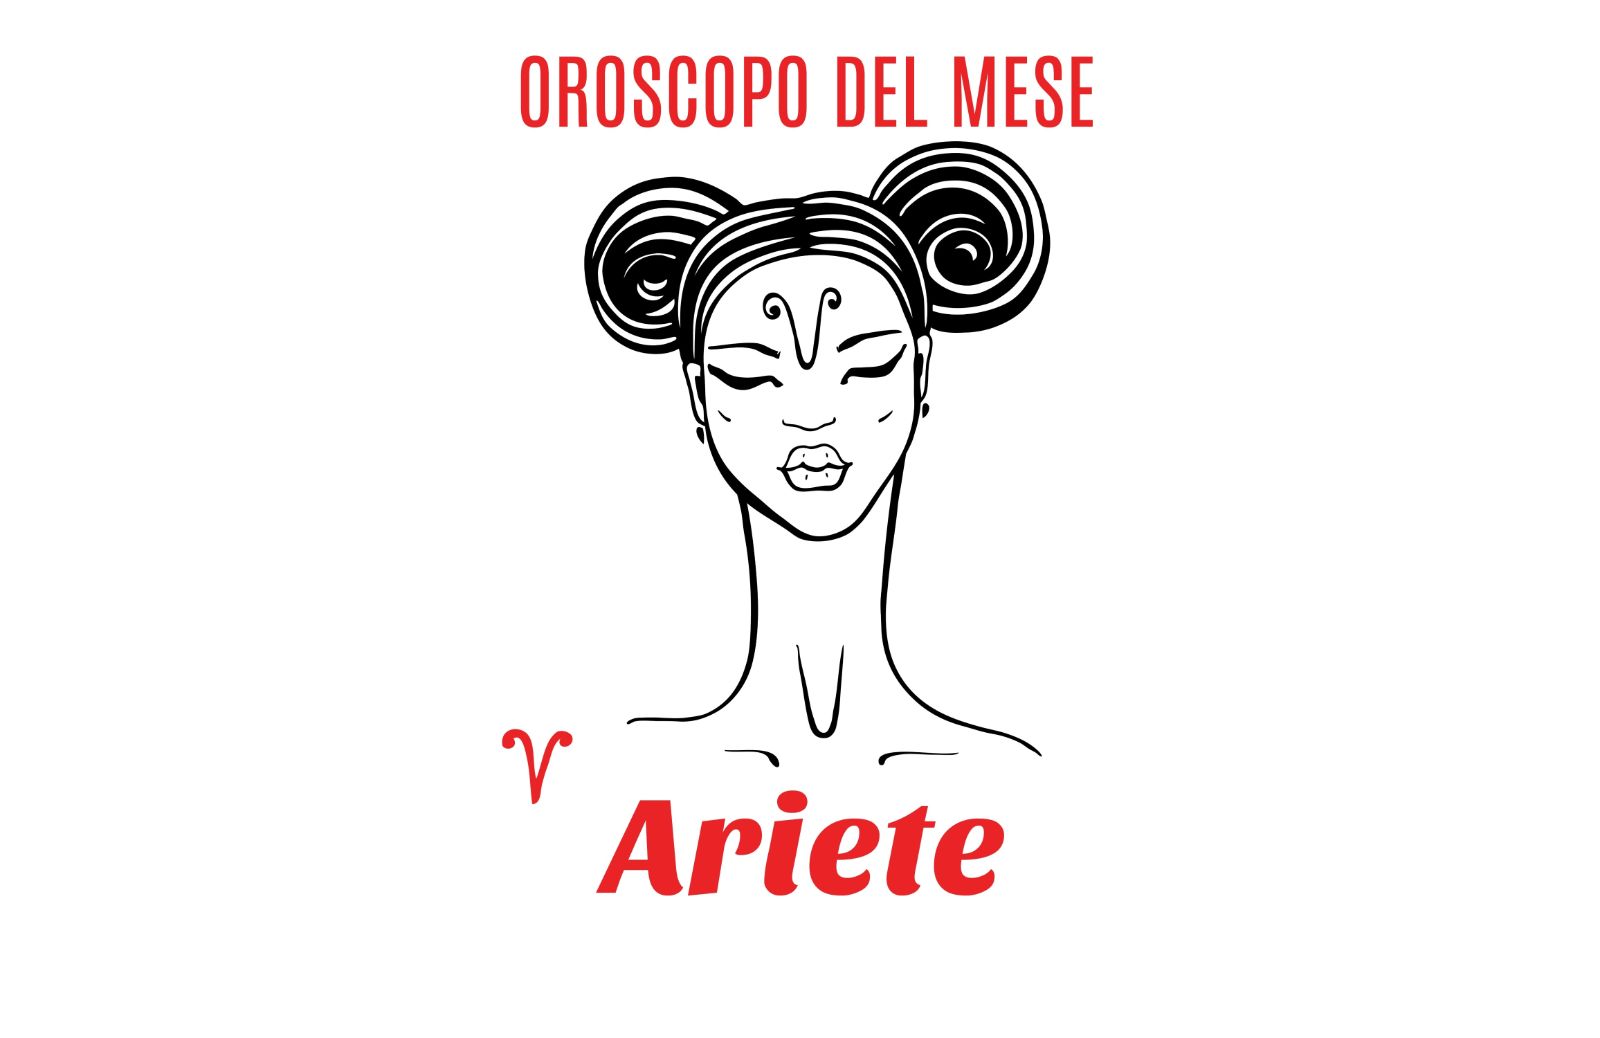 Oroscopo del mese: Ariete - luglio 2018